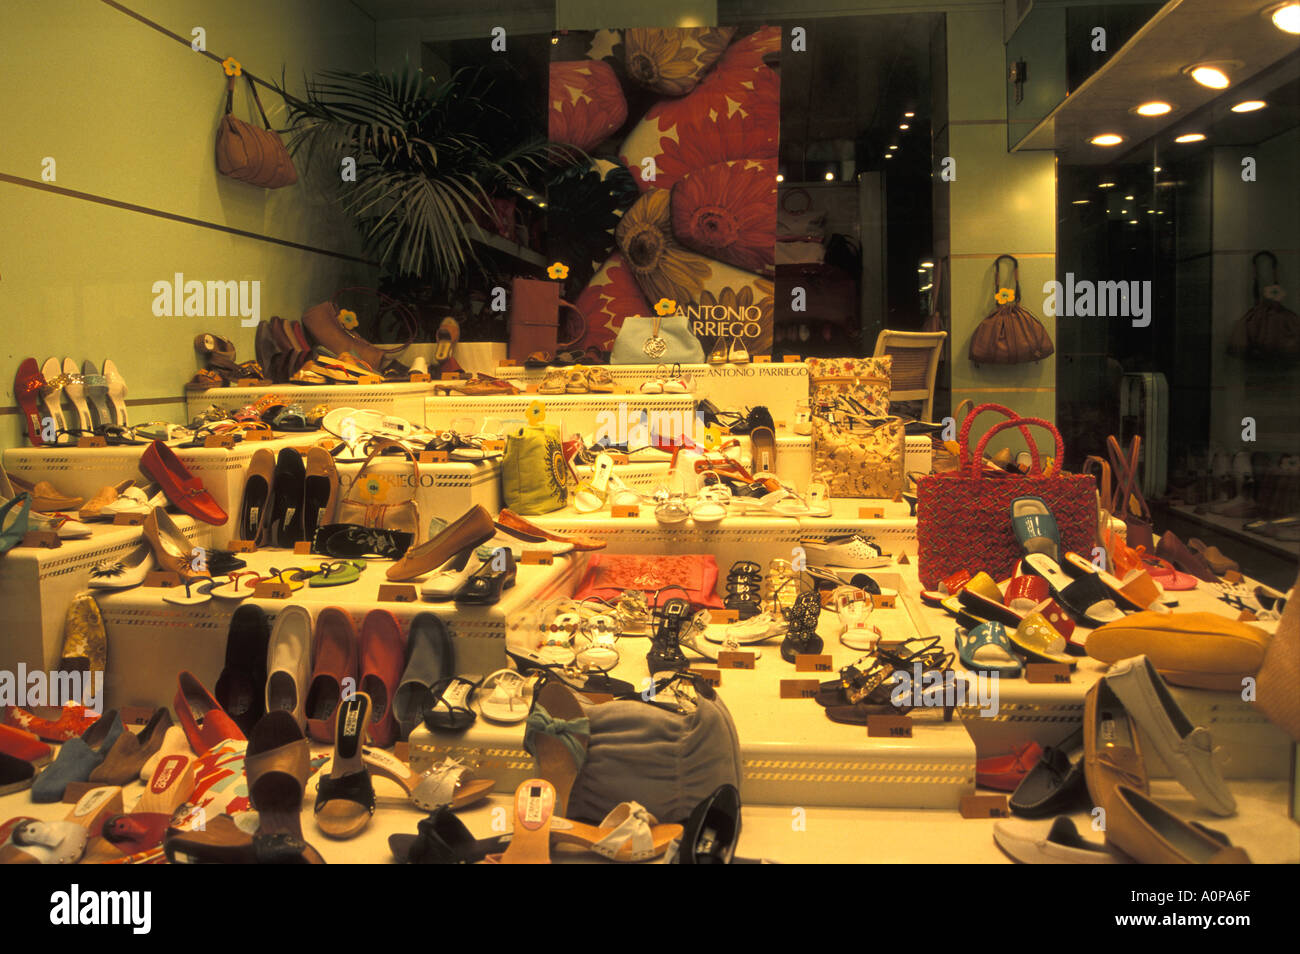 designer shoe shops